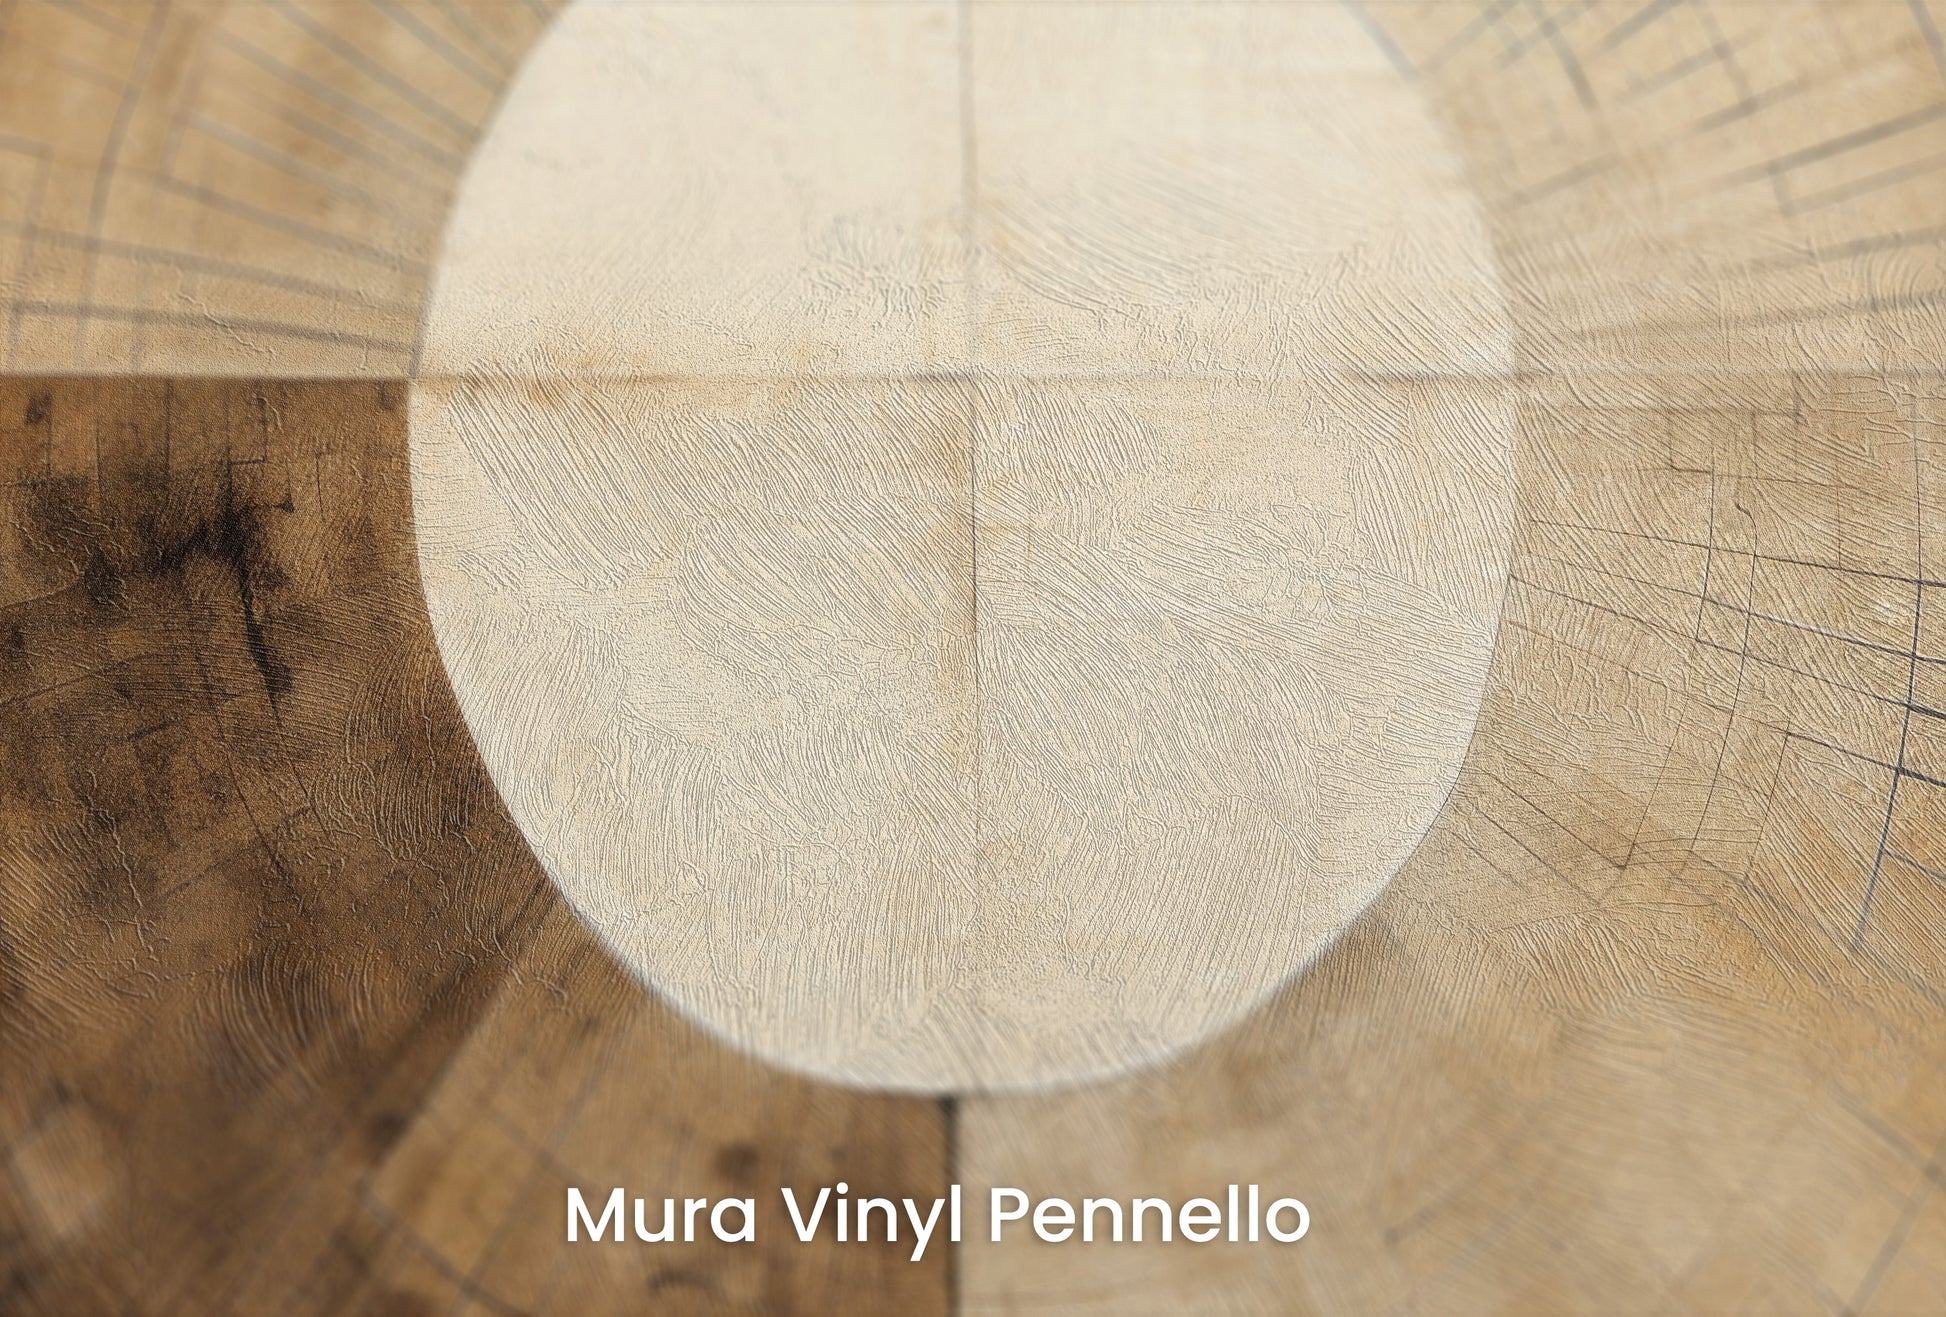 Zbliżenie na artystyczną fototapetę o nazwie AURORA DISC HARMONY na podłożu Mura Vinyl Pennello - faktura pociągnięć pędzla malarskiego.